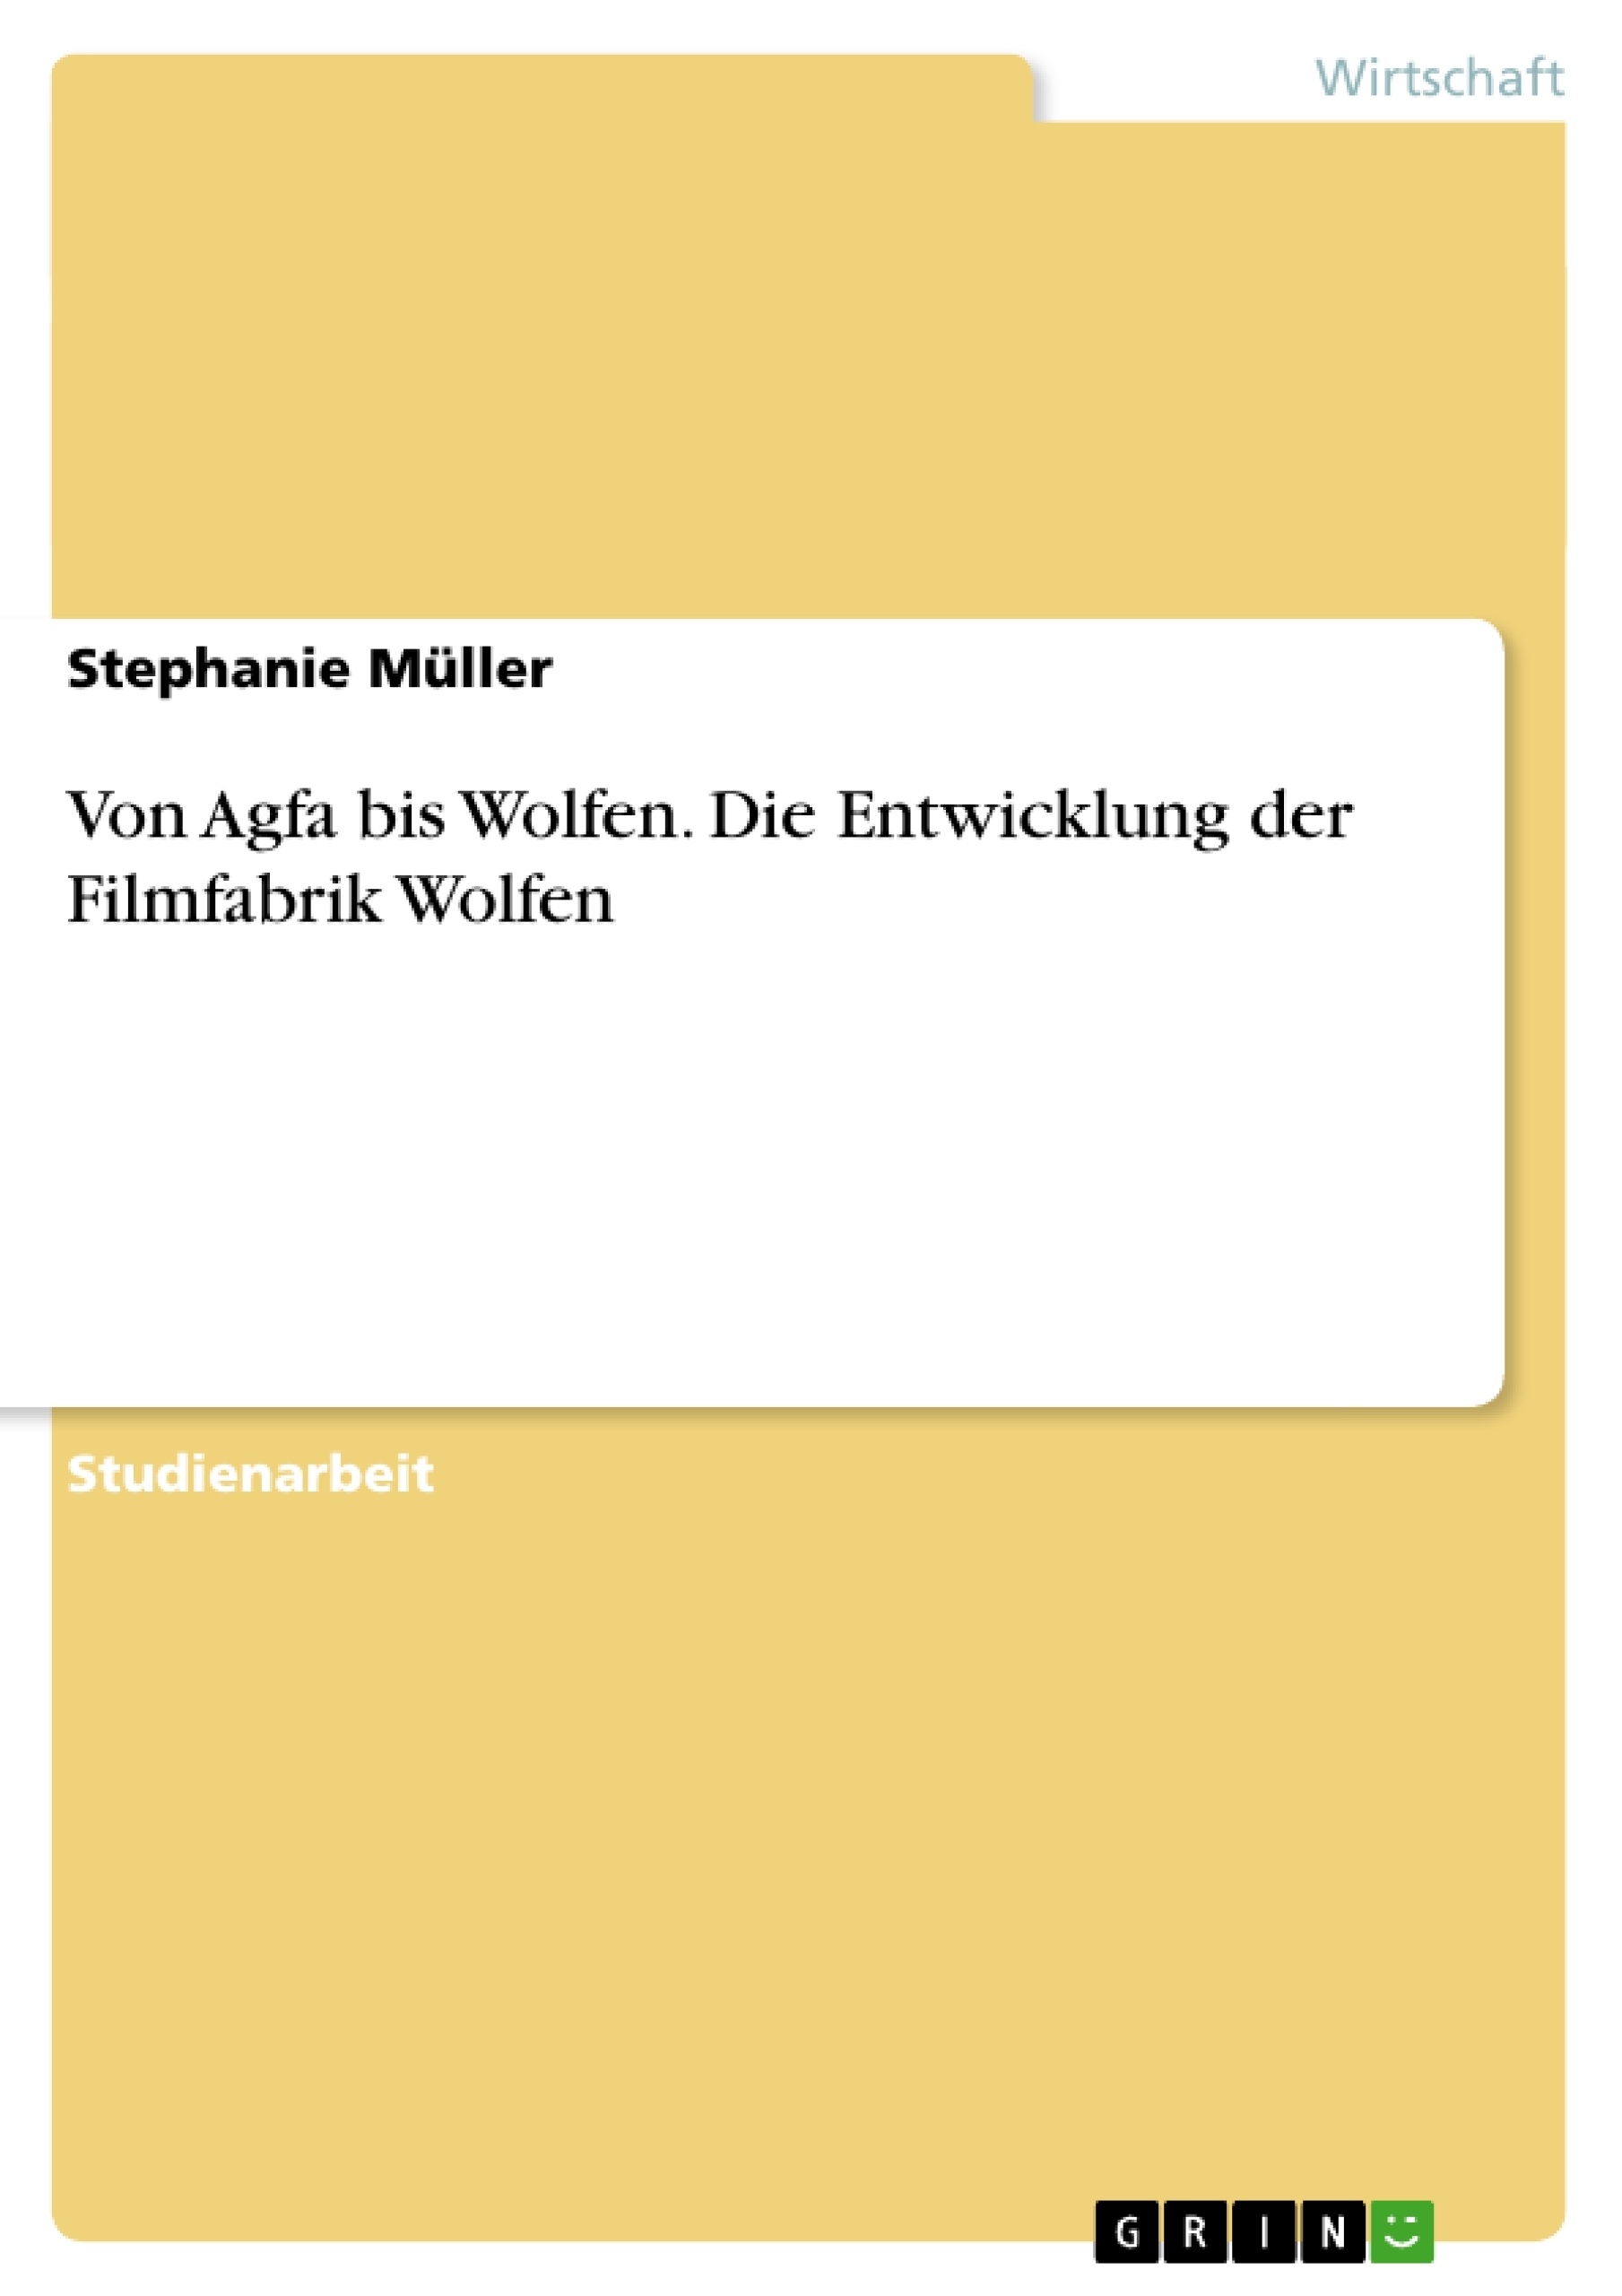 Título: Von Agfa bis Wolfen. Die Entwicklung der Filmfabrik Wolfen